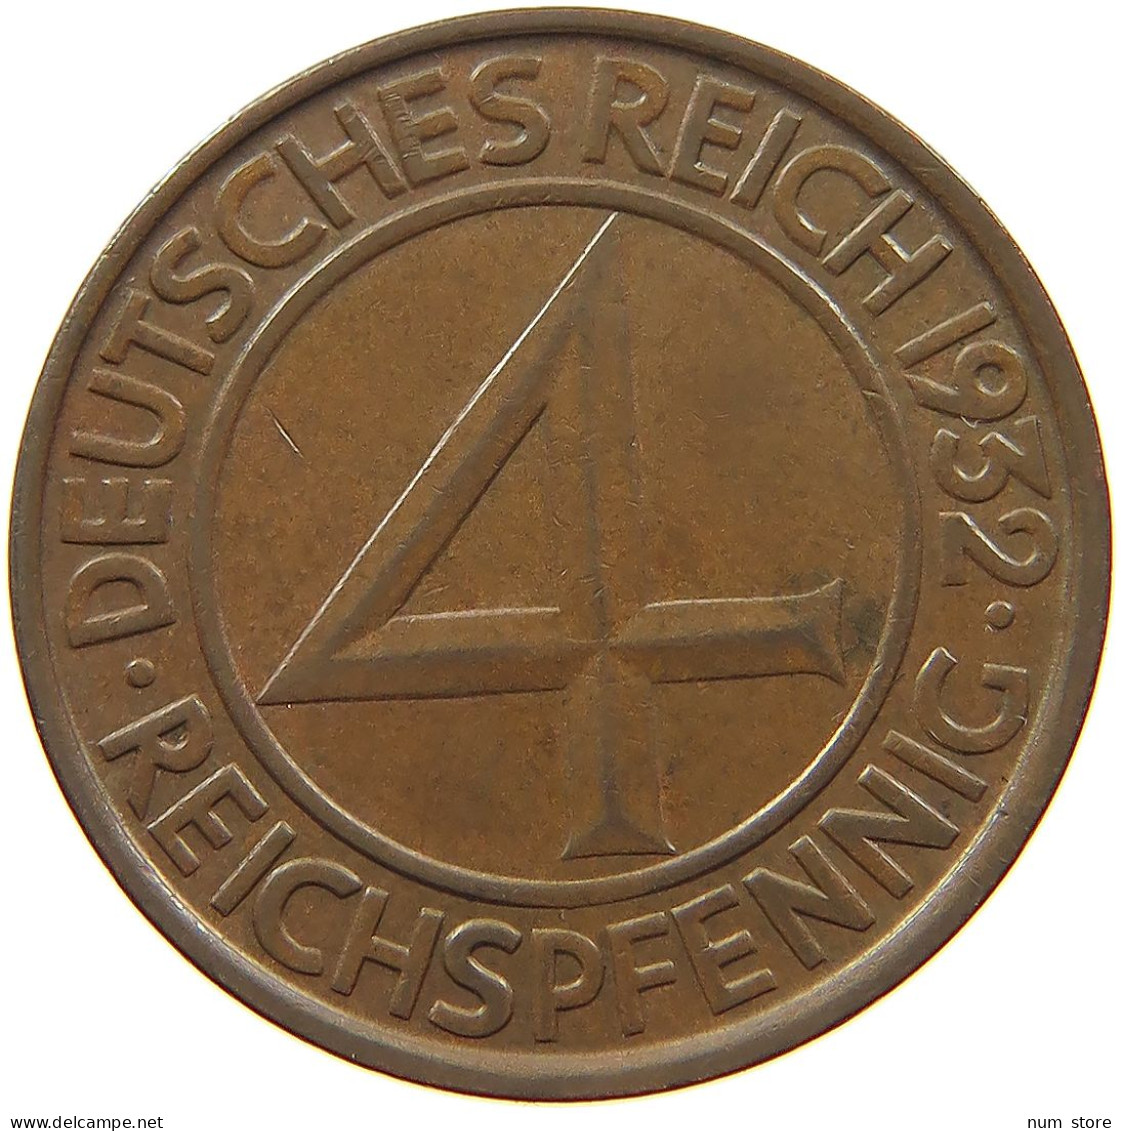 WEIMARER REPUBLIK 4 PFENNIG 1932 G  #MA 099912 - 4 Reichspfennig